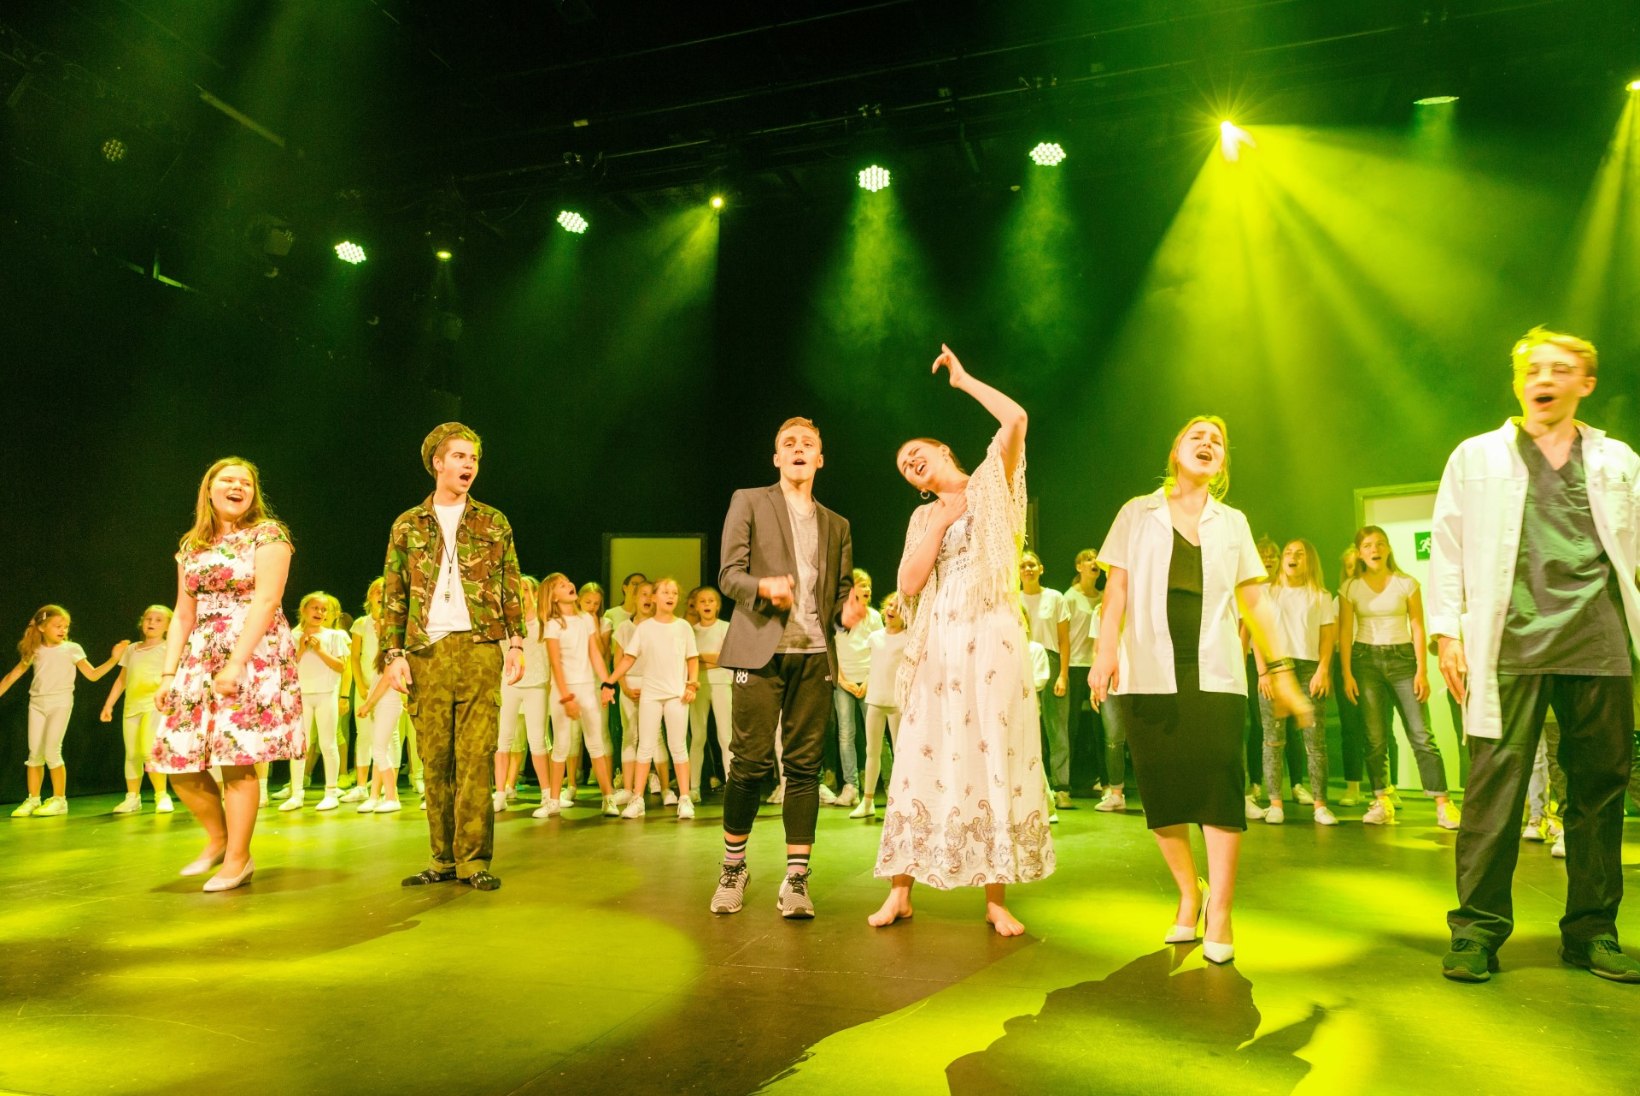 FOTOD PROOVIST | Hanna-Liina Võsa ja Märt Agu panevad uues muusikalis 100 last tantsima: „See pole üldse raske!“